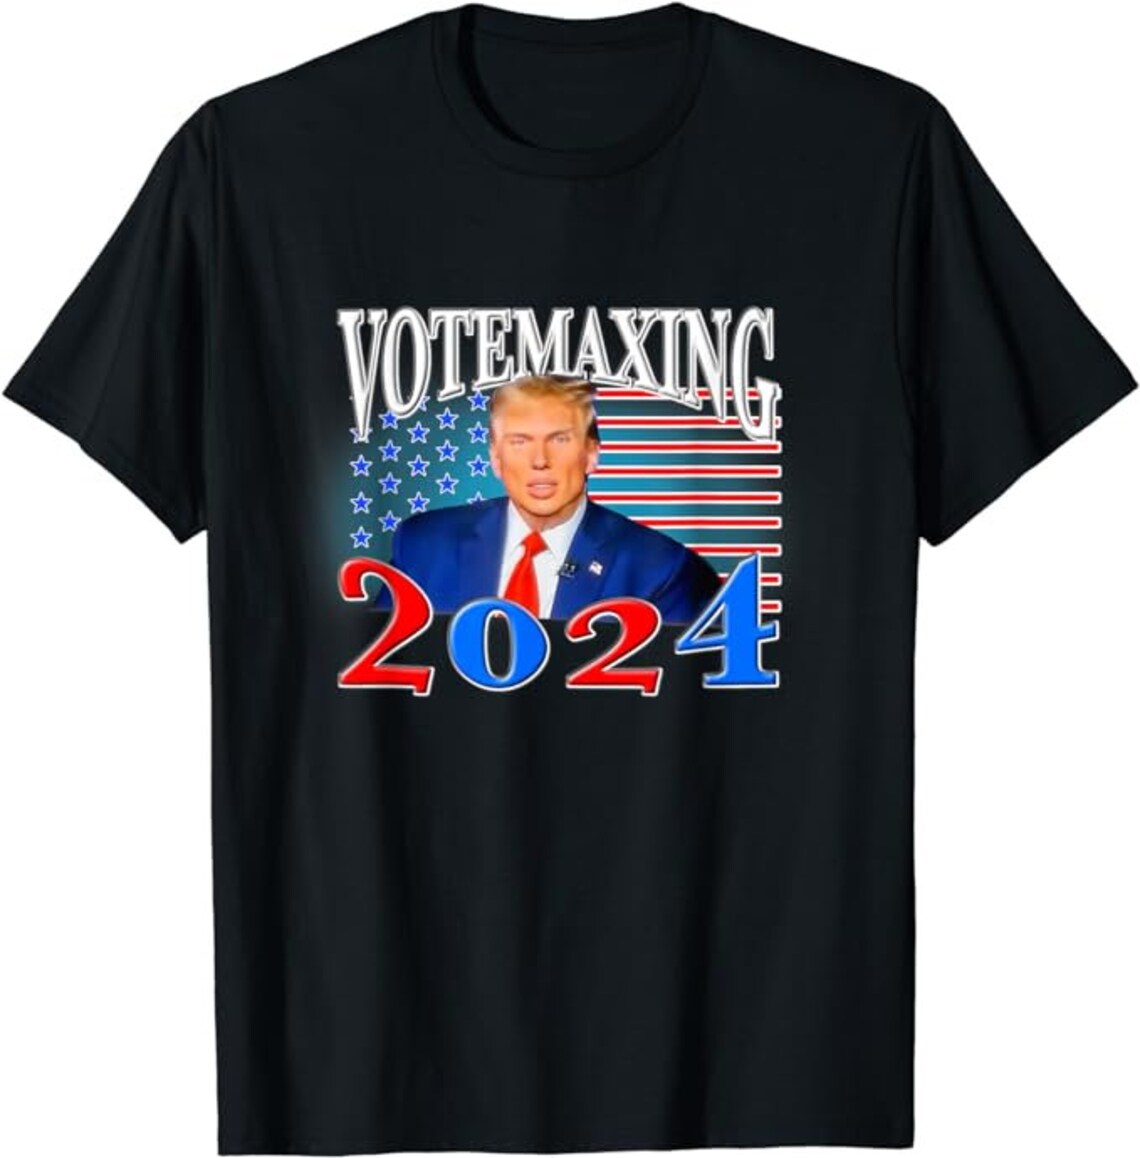 Votemaxxing 2024 Shirt - Etsy